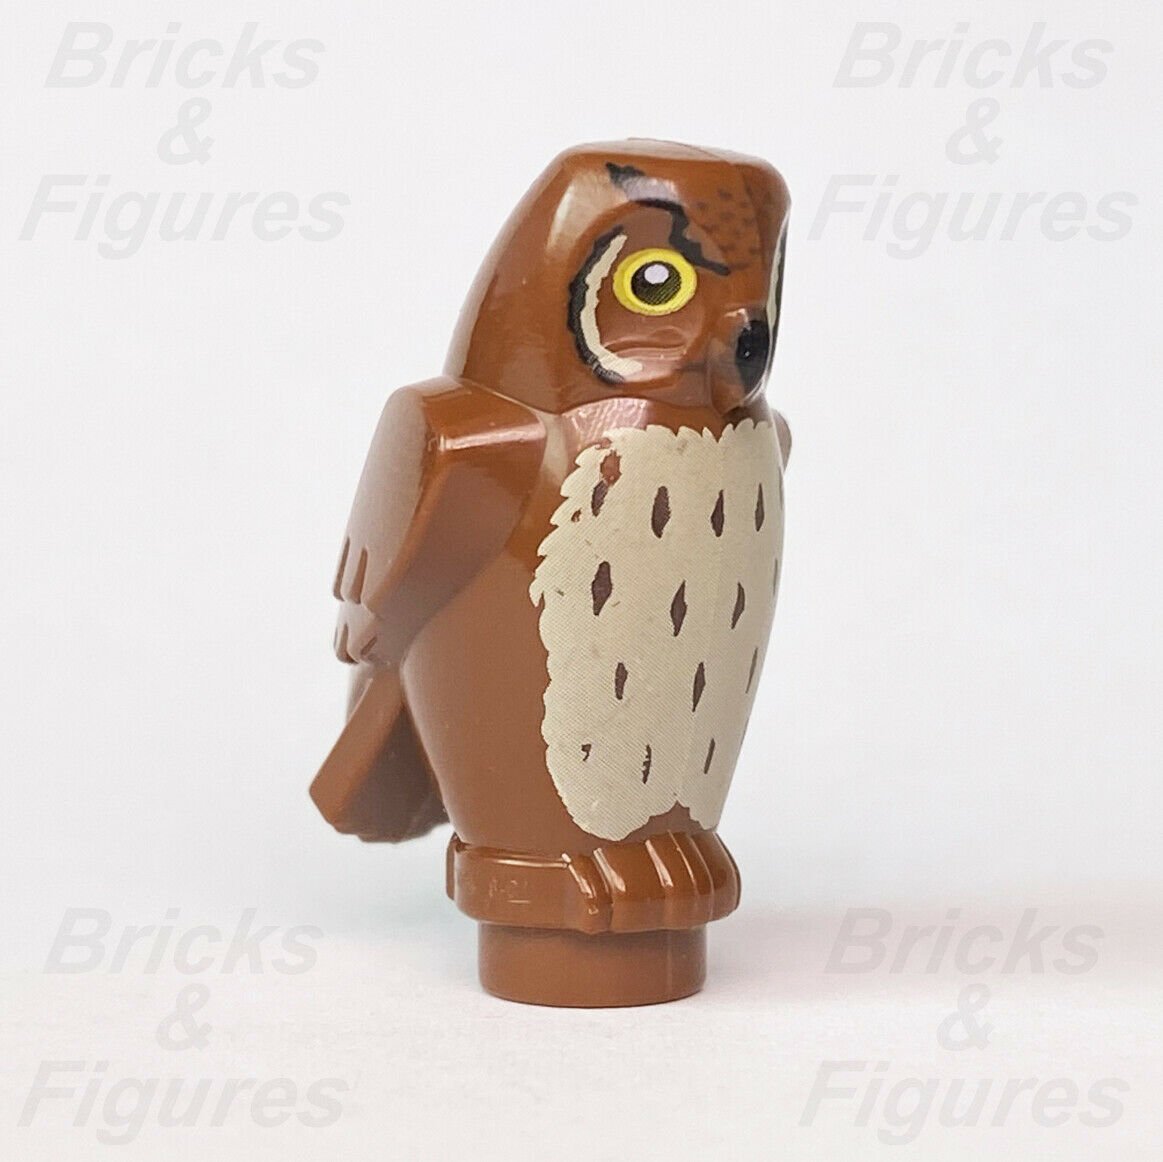 Harry Potter LEGO Pigwidgeon Owl Bird Brown Animal Part 75968 75980 40500 - Bricks & Figures